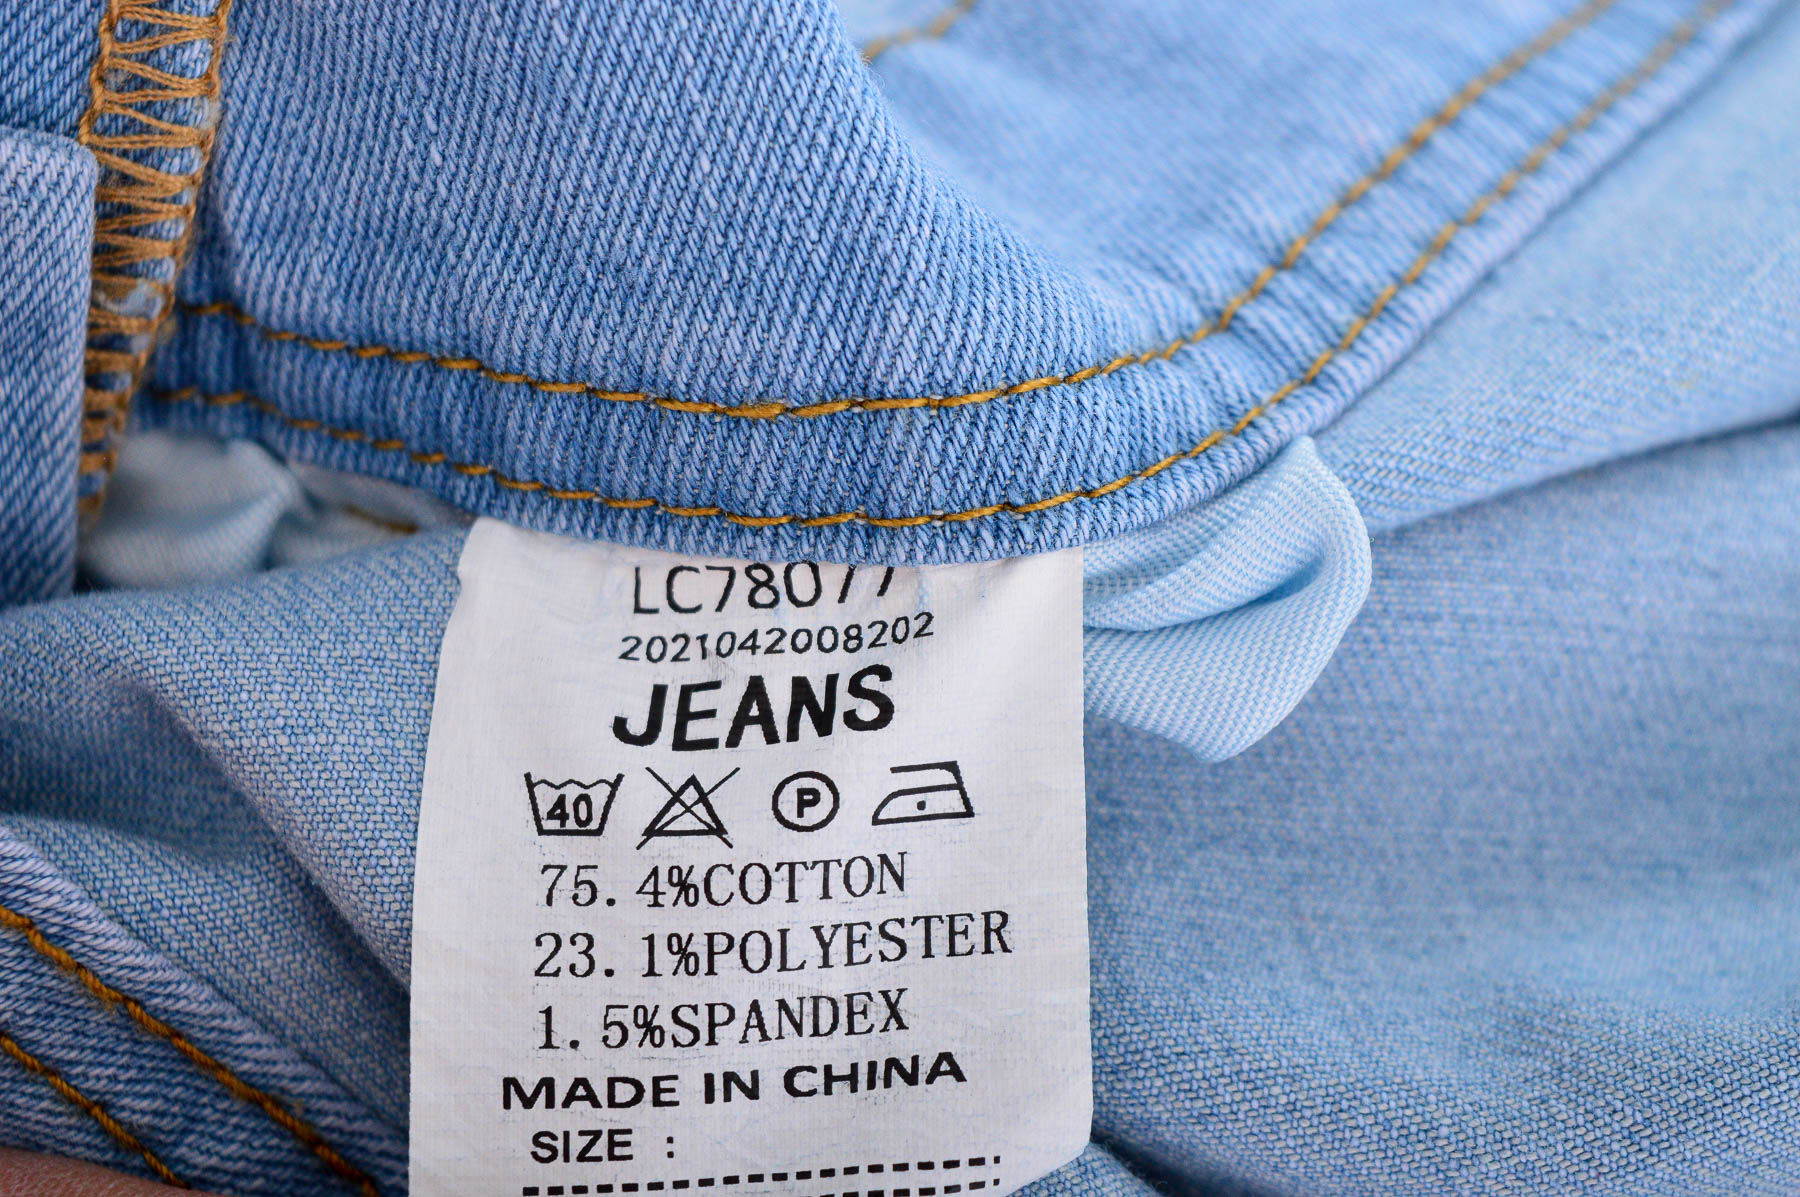 Damski kombinezon dżinsowy - Jeans - 2